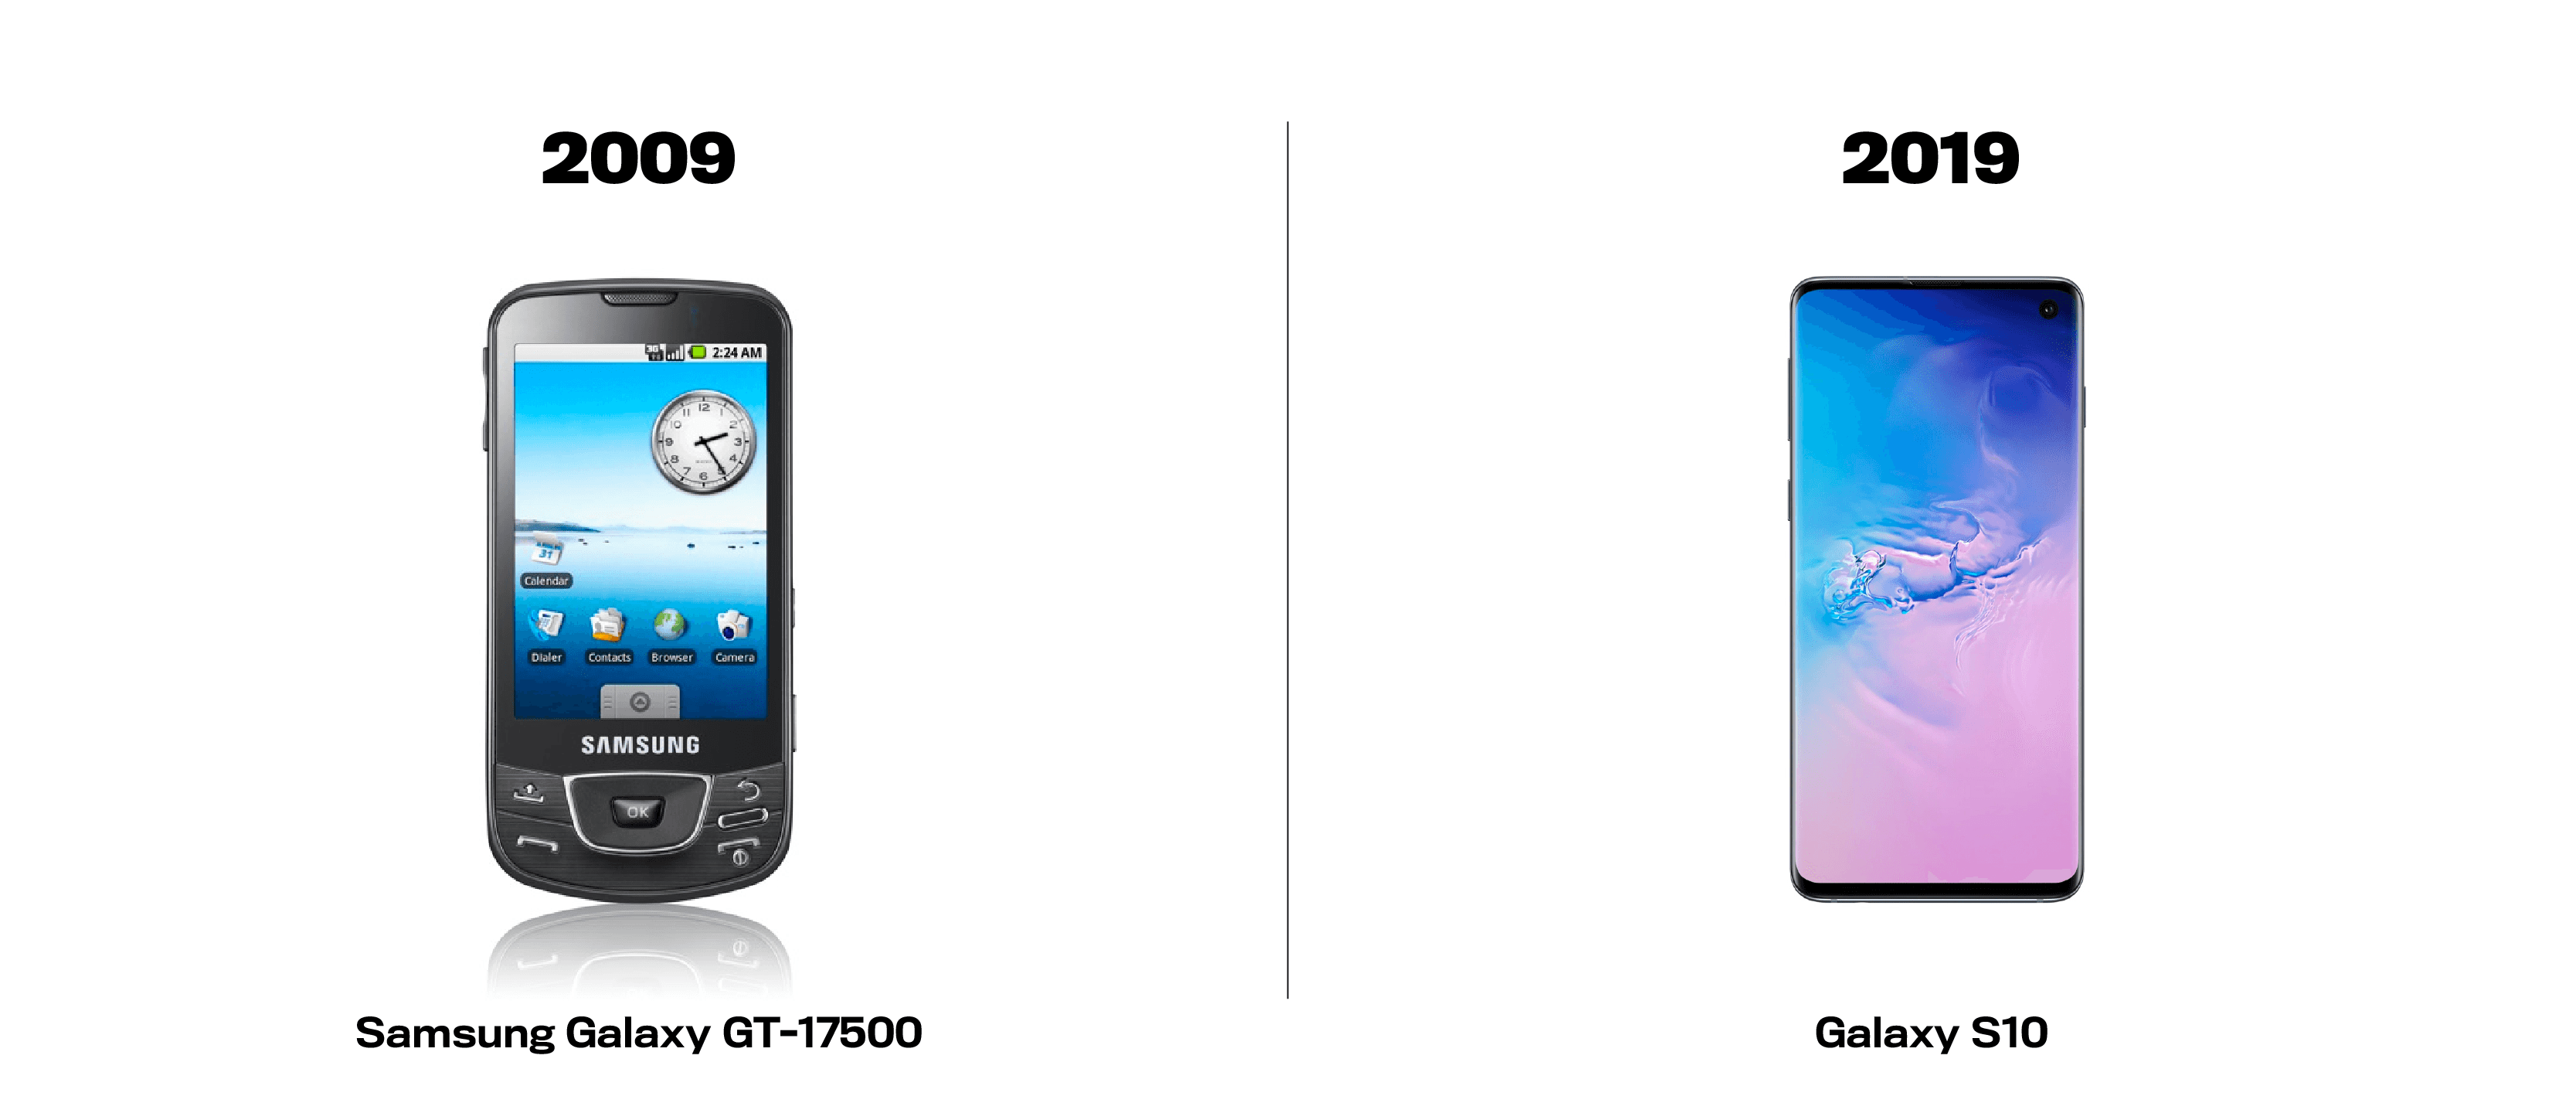 samsung-galaxy-gt17500-vs-galaxy-s10-2009-vs-2019